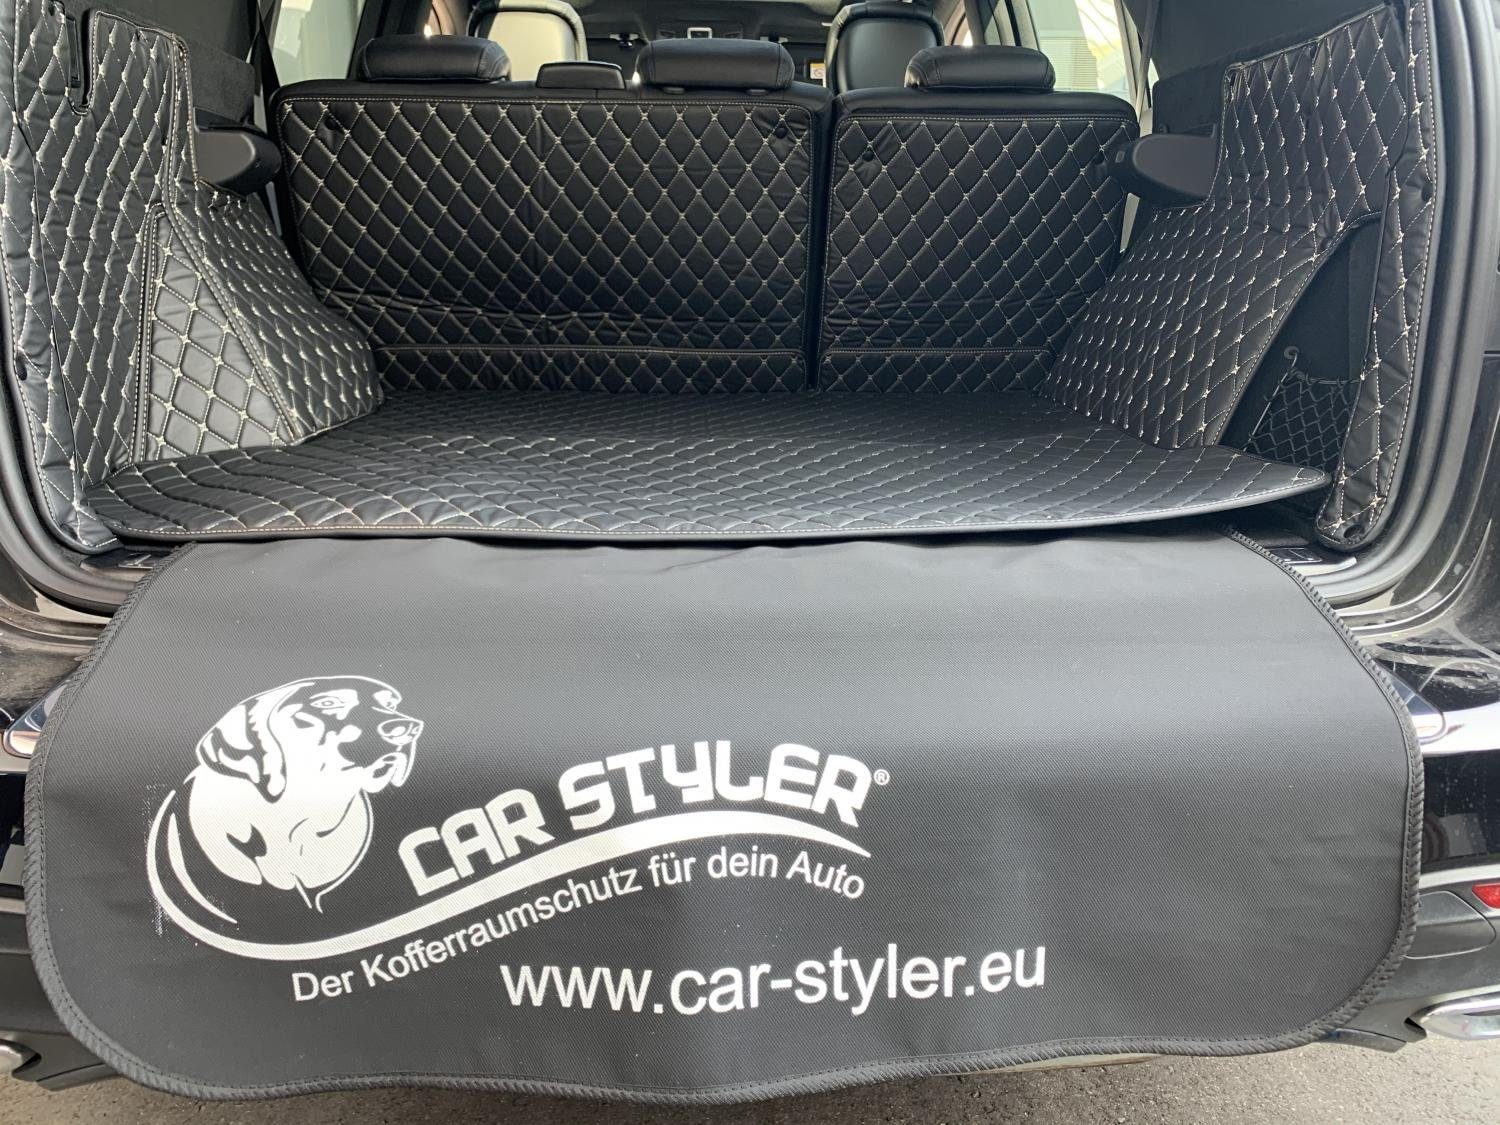 Carstyler Der Kofferraumschutz für dein Auto